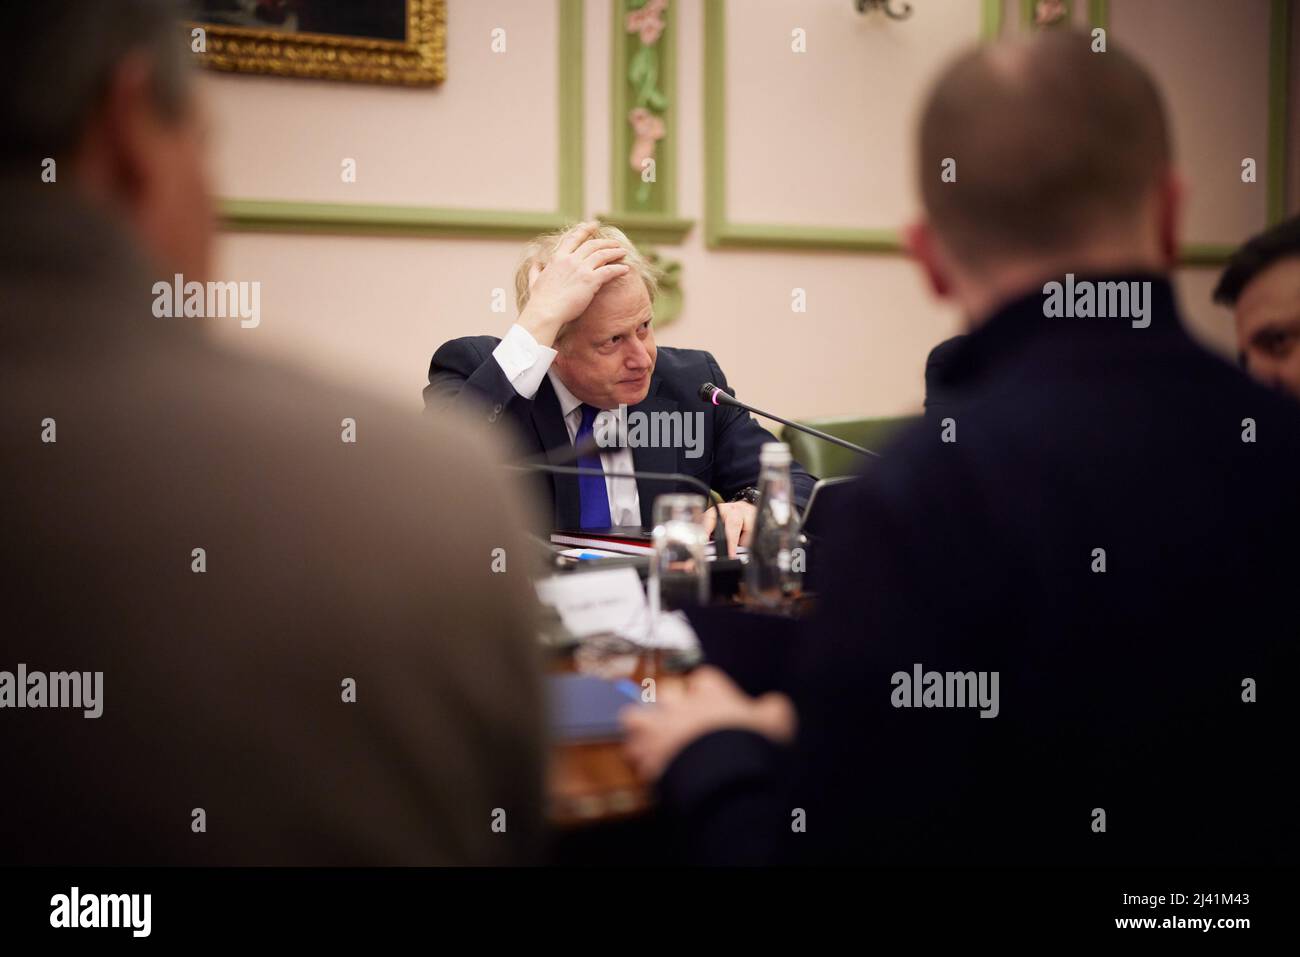 KIEV, UKRAINE - 09 avril 2022 - le Premier ministre britannique Boris Johnson rencontre le président ukrainien Volodymyr Zelensky lors d'une visite surprise à la guerre Banque D'Images